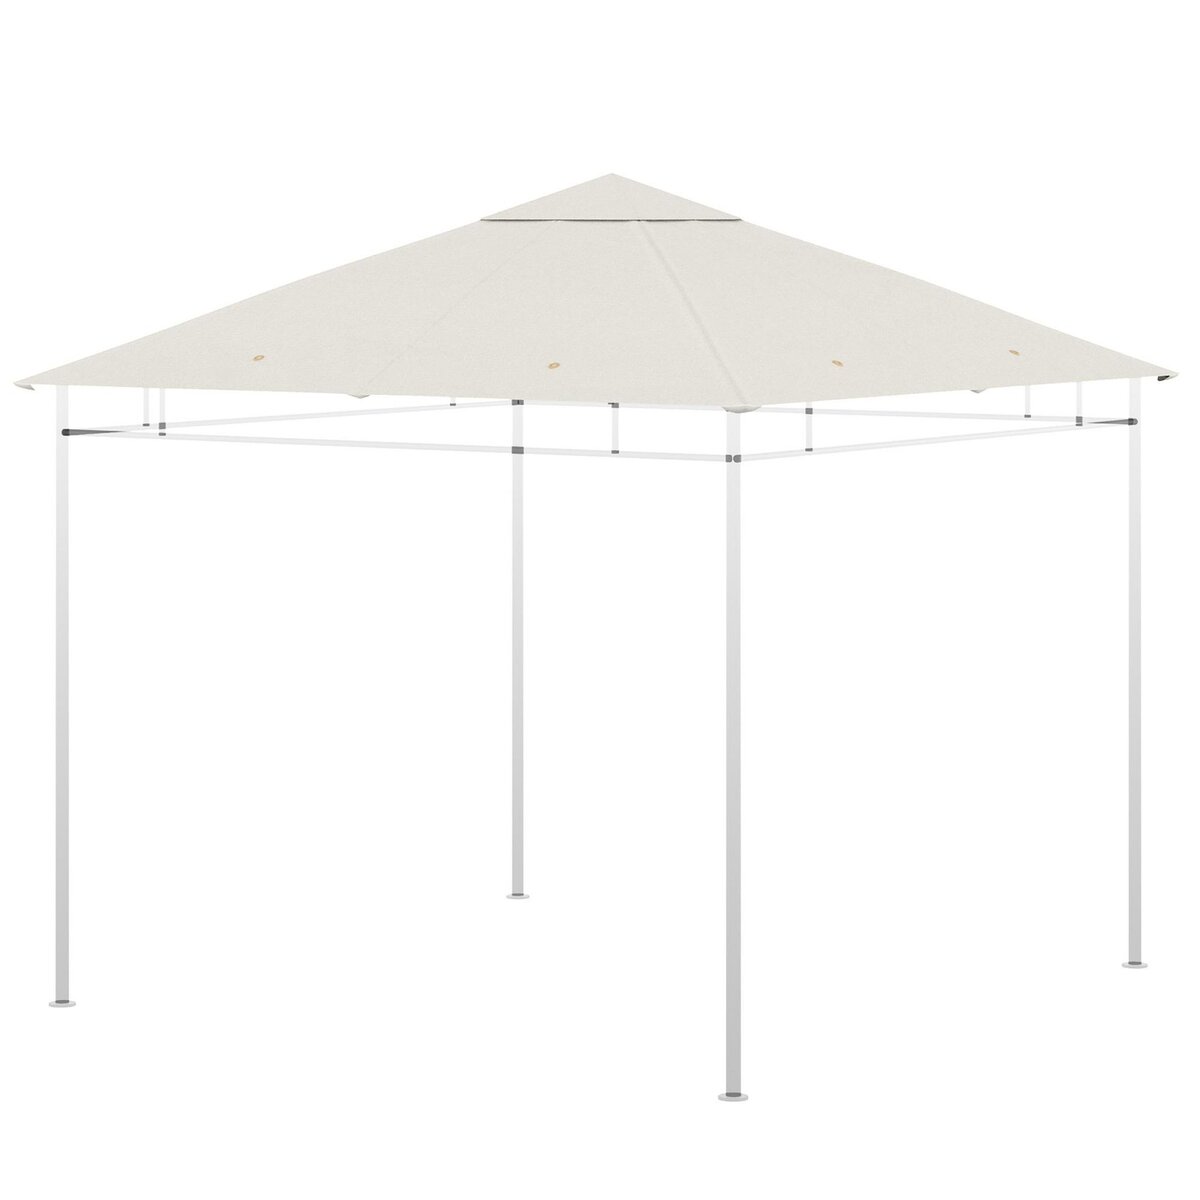 OUTSUNNY Toile de rechange pour pavillon tonnelle tente 3 x 3 m polyester haute densité 180 g/m² revêtement PA anti-UV crème